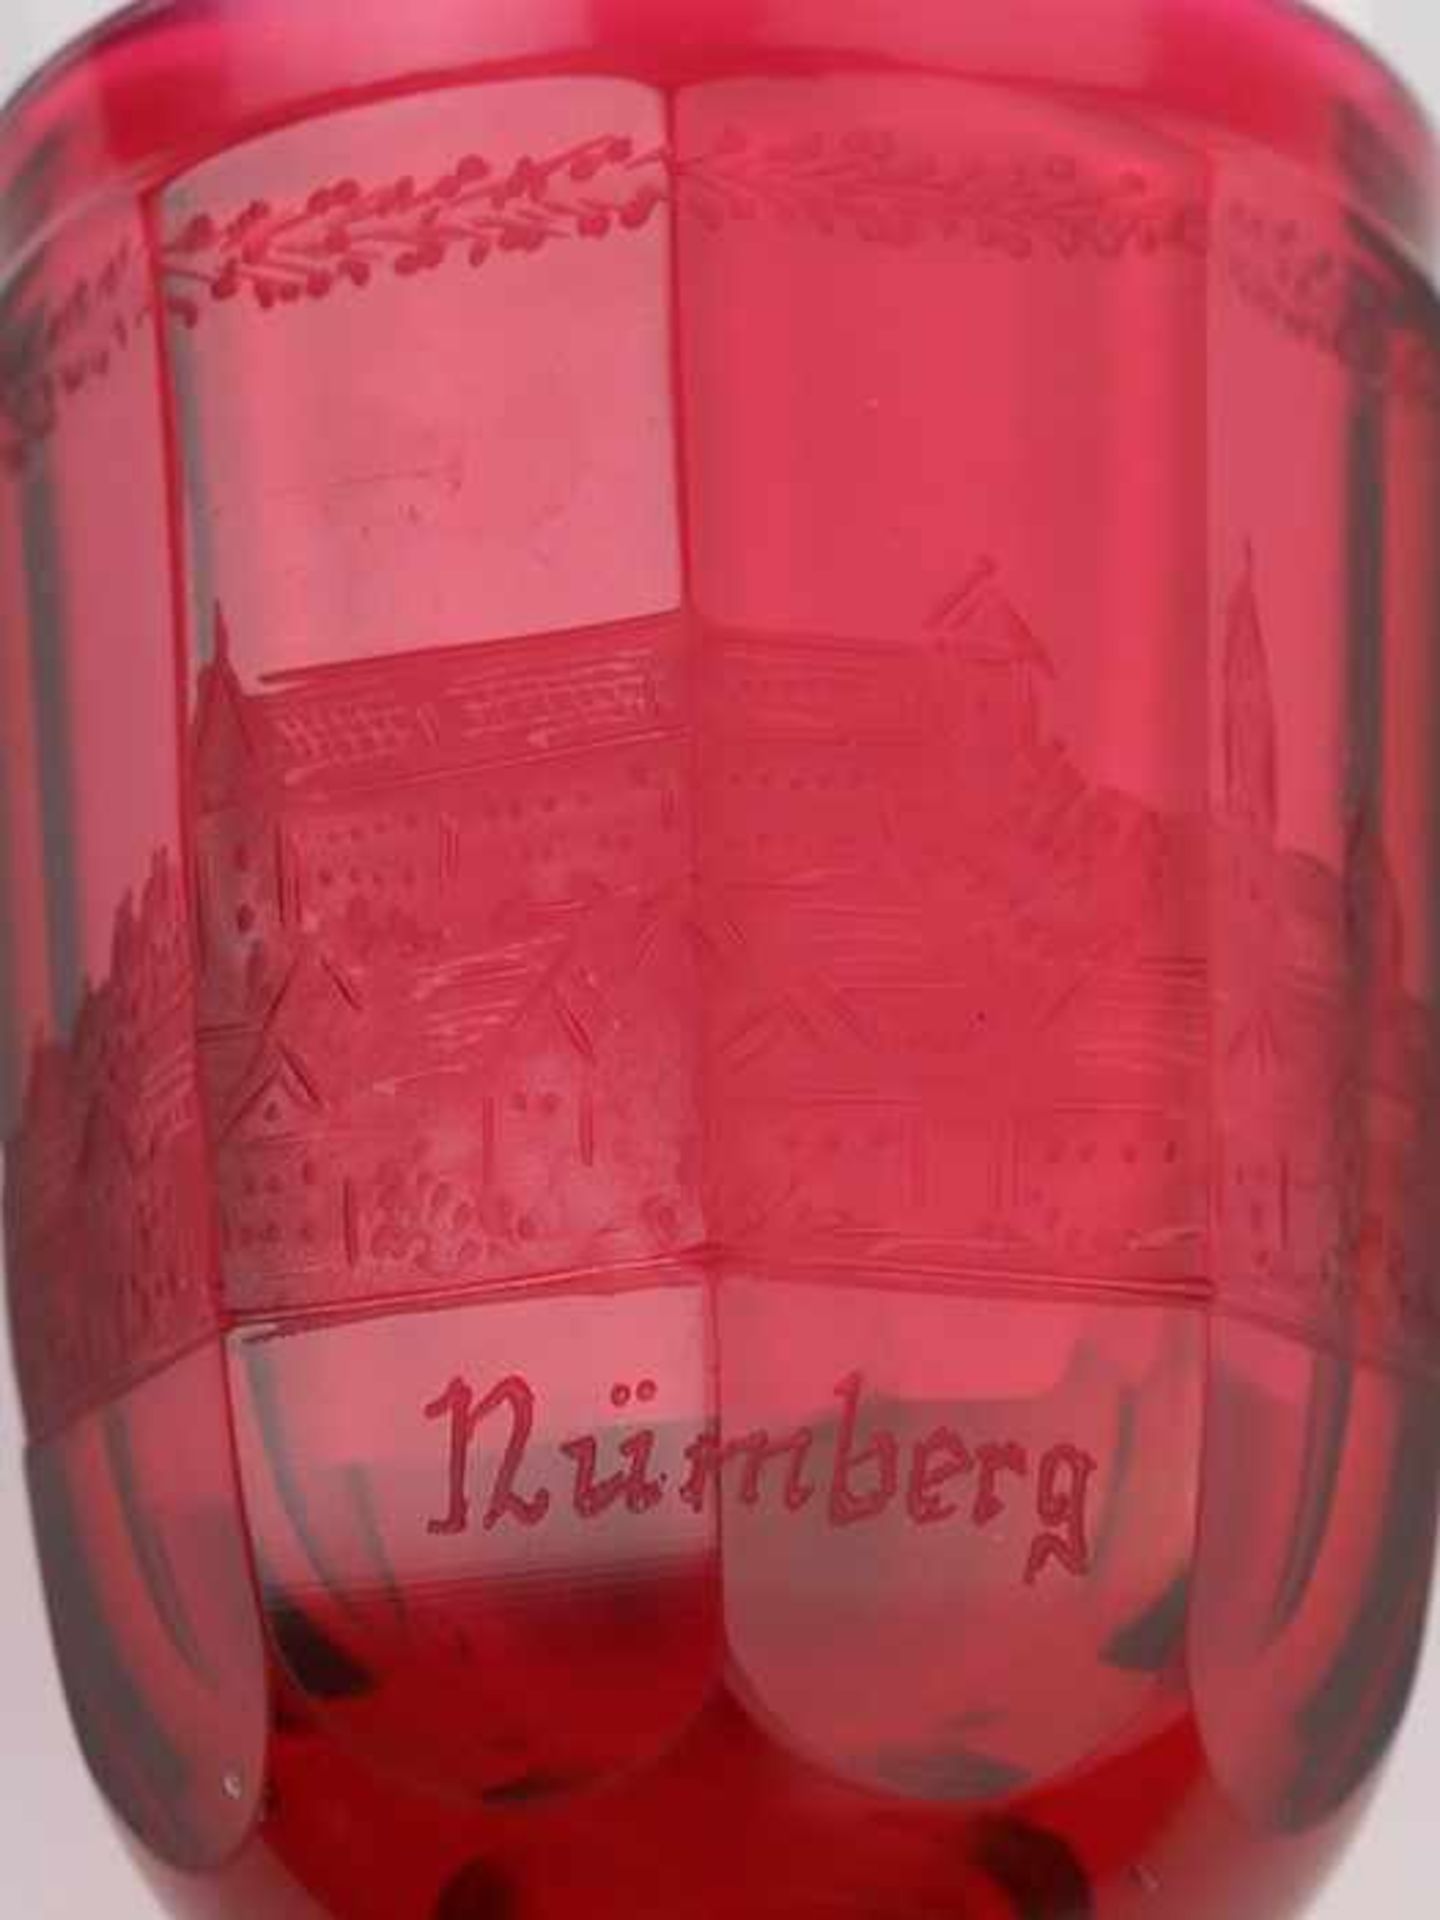 Andenkenbecher19. Jh., farbloses u. rubinfarbenes Glas, runder, zweifach gewulsteter Stand, konkaver - Bild 4 aus 8